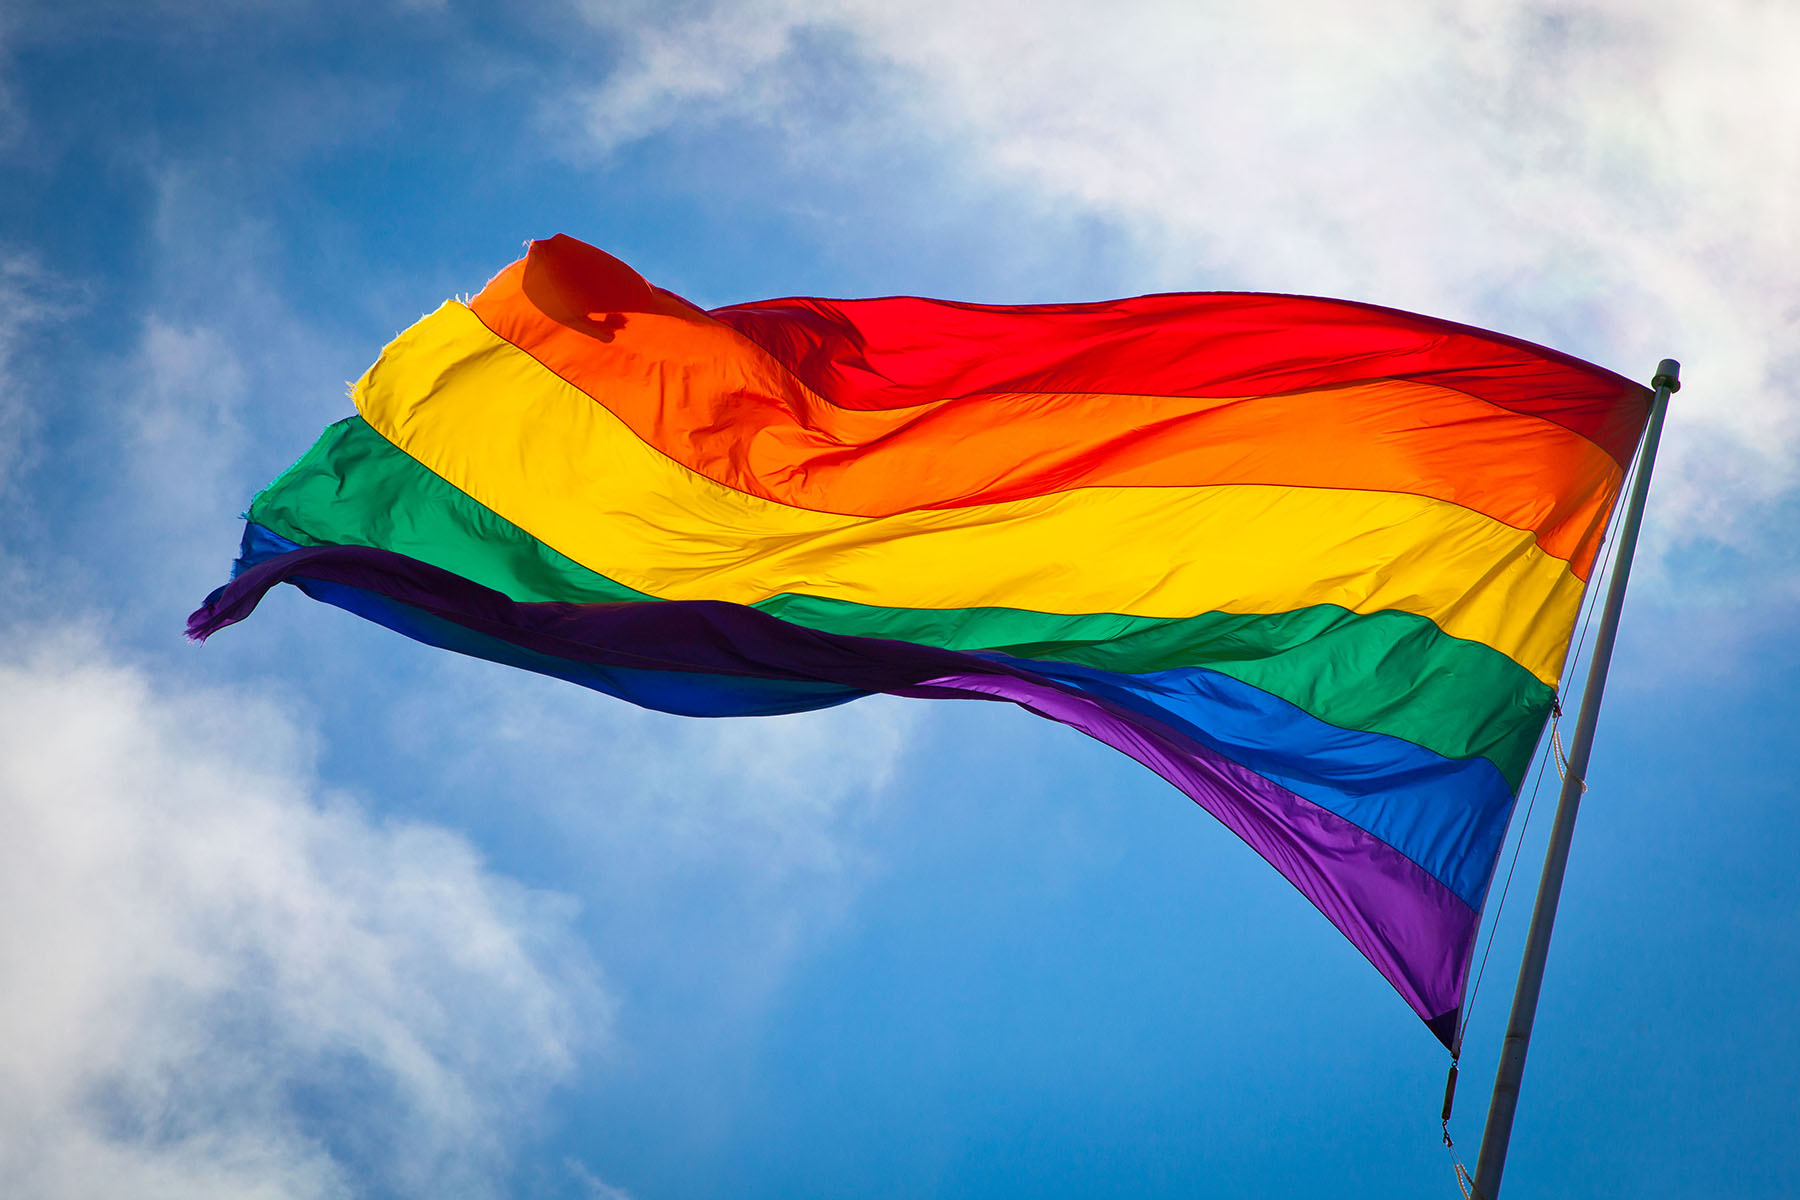 Gökkuşağı ve LGBT Temalı Ürünler +18 Uyarısıyla Satışa Sunulacak